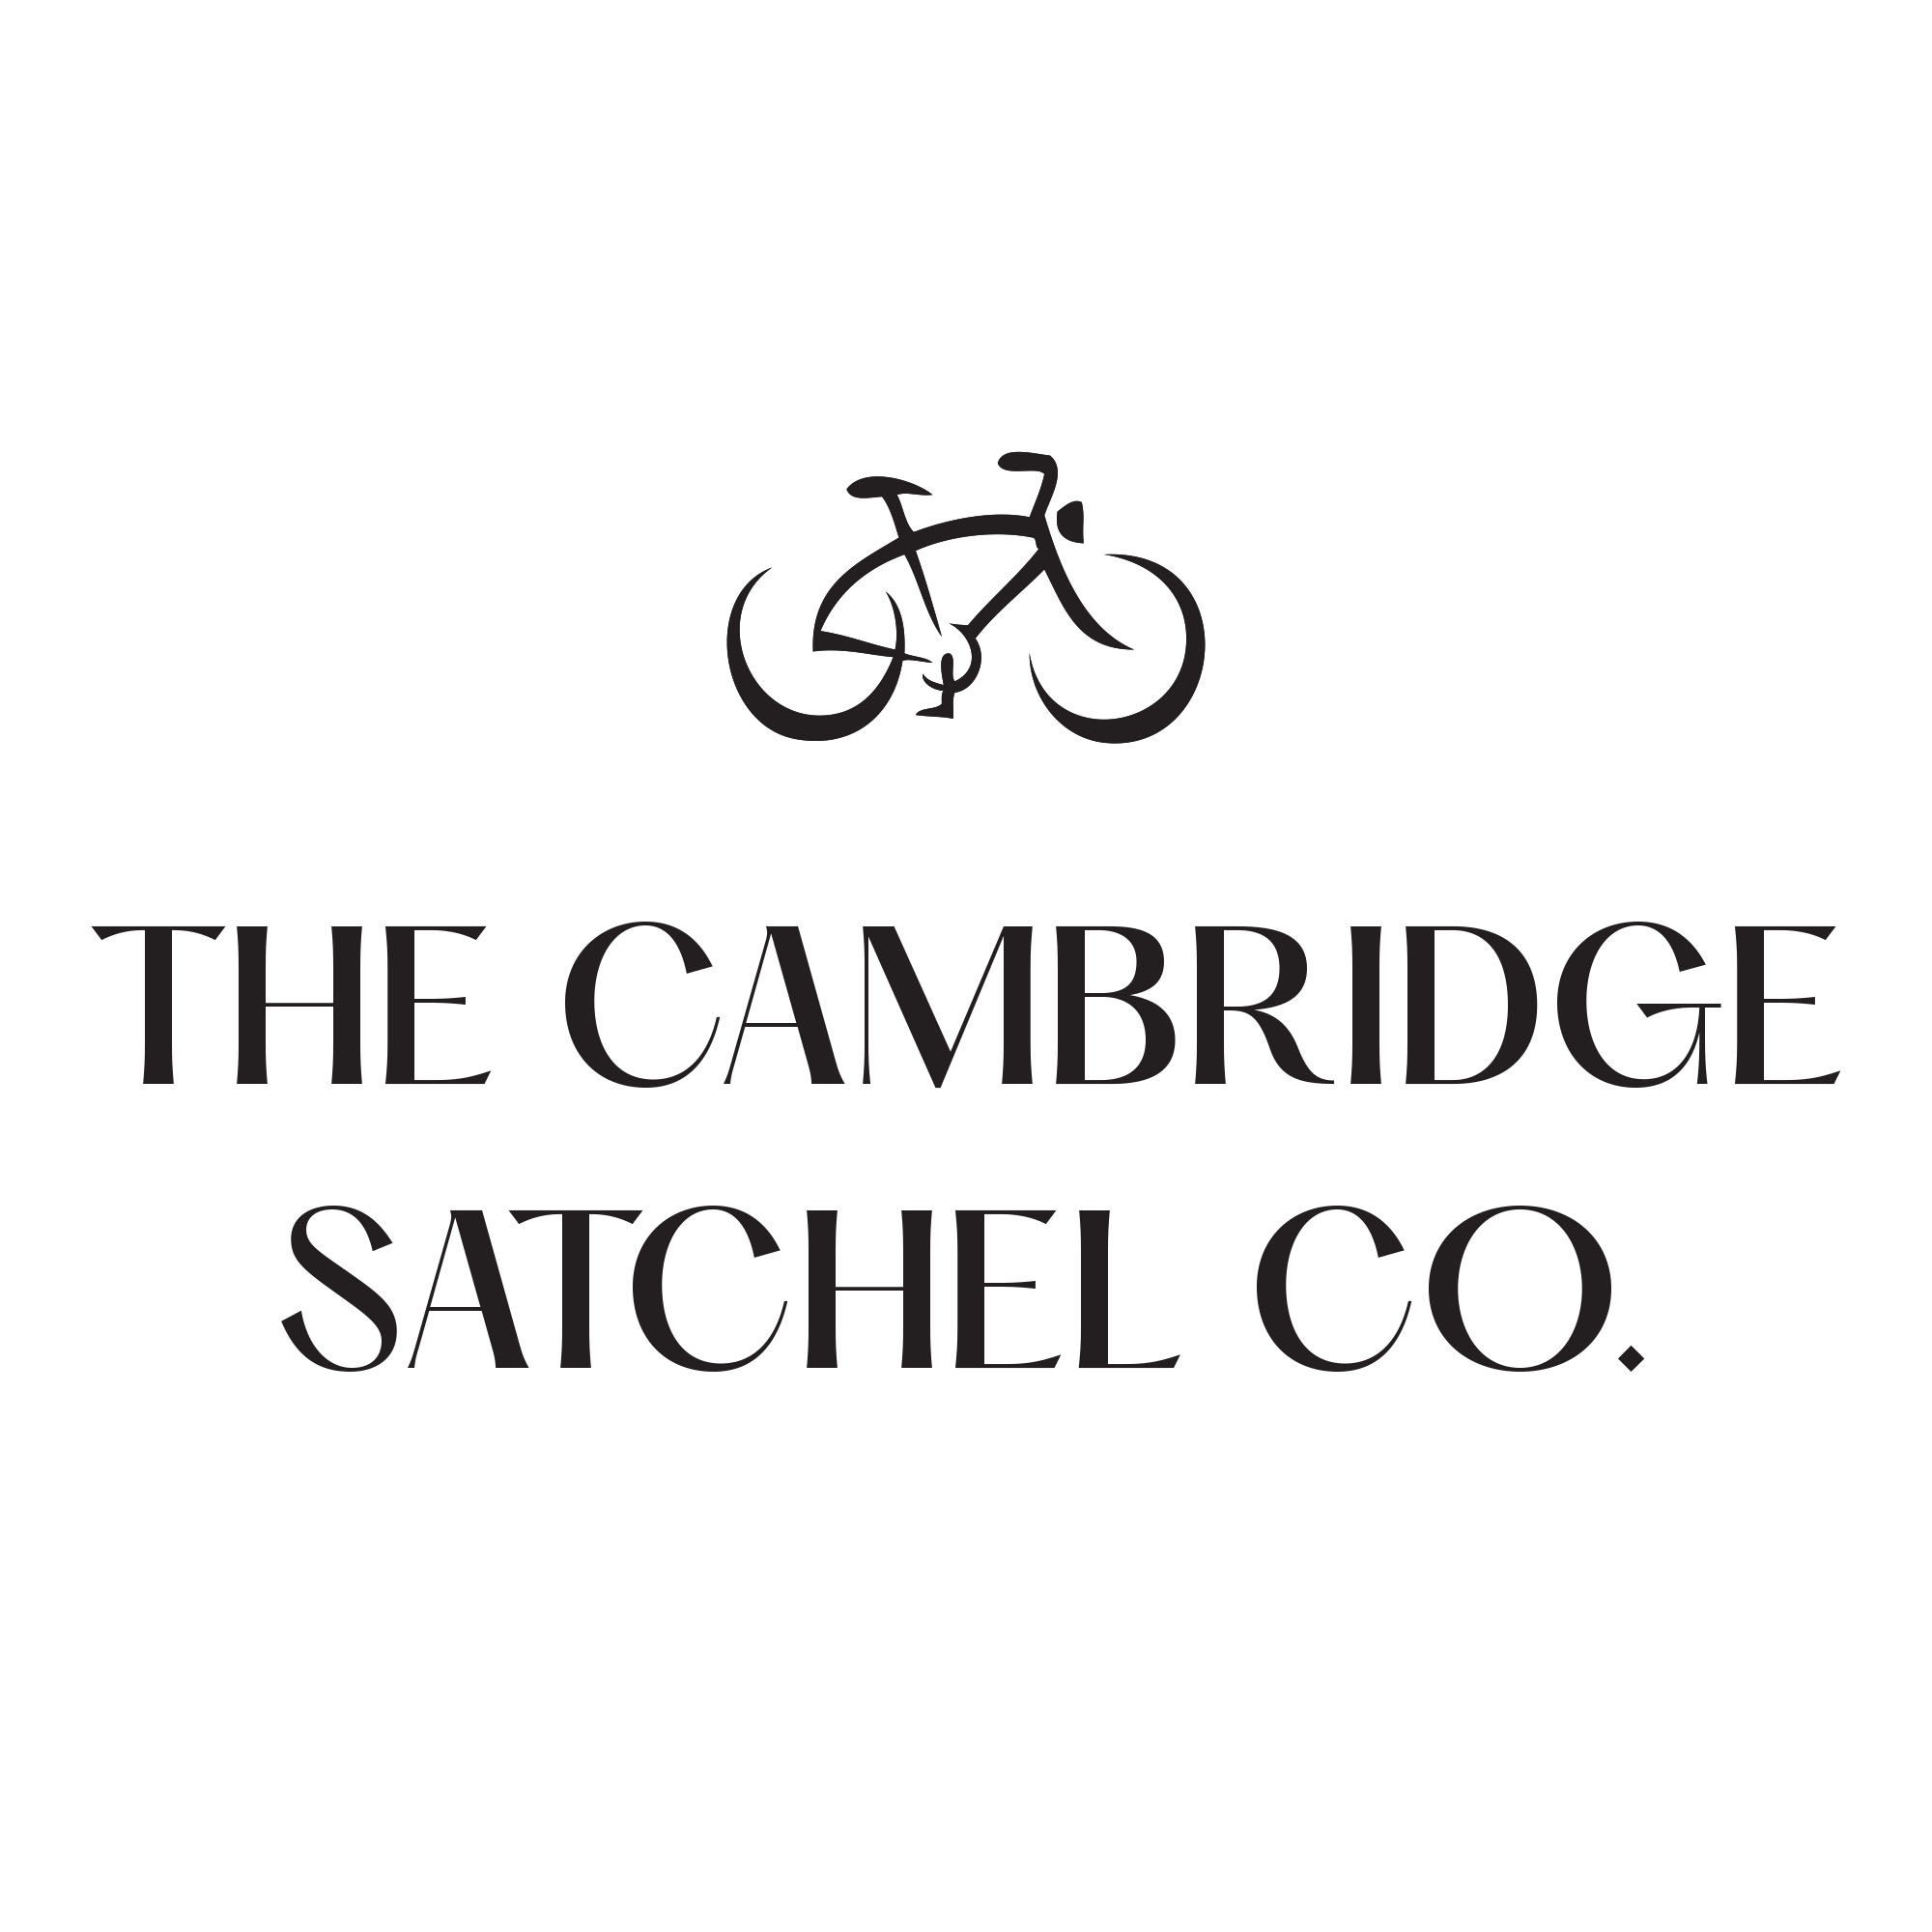 【新品速递】Cambridge Satchel剑桥包上新色！千鸟格搭配优雅橡木色！圆筒包上架就被抢光！